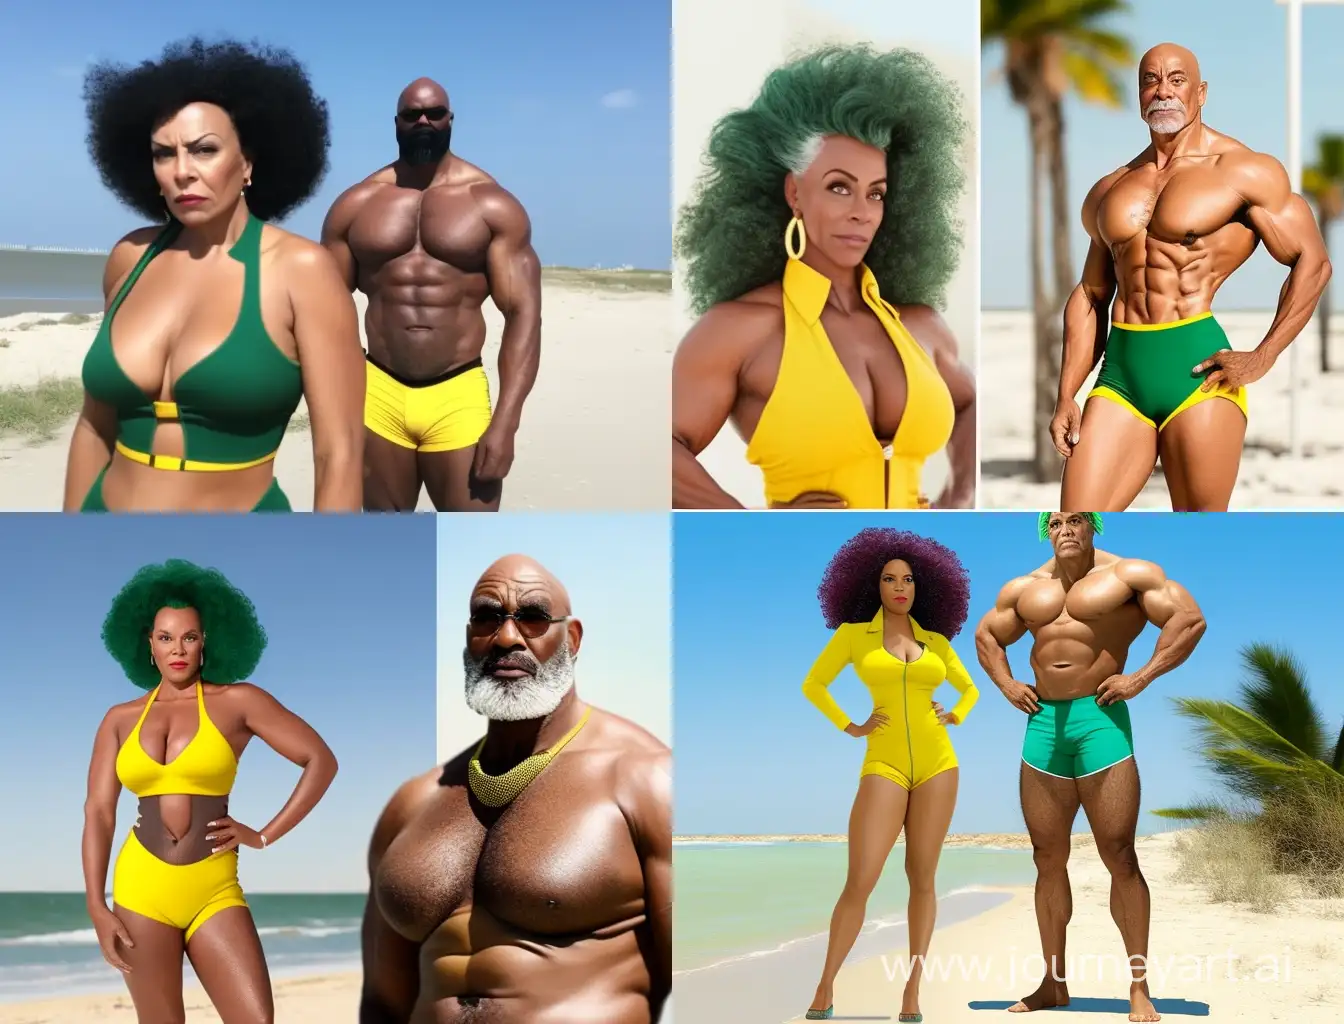 una mujer de 60 años sexy en la playa con un bikini amarillo de 1,60 metros que le sienta bien y la foto se ve de cuerpo entero. Su novio que la acompaña es afroamericano y es mucho mas alto y musculado de 1,80 metros con un traje de baño verde.